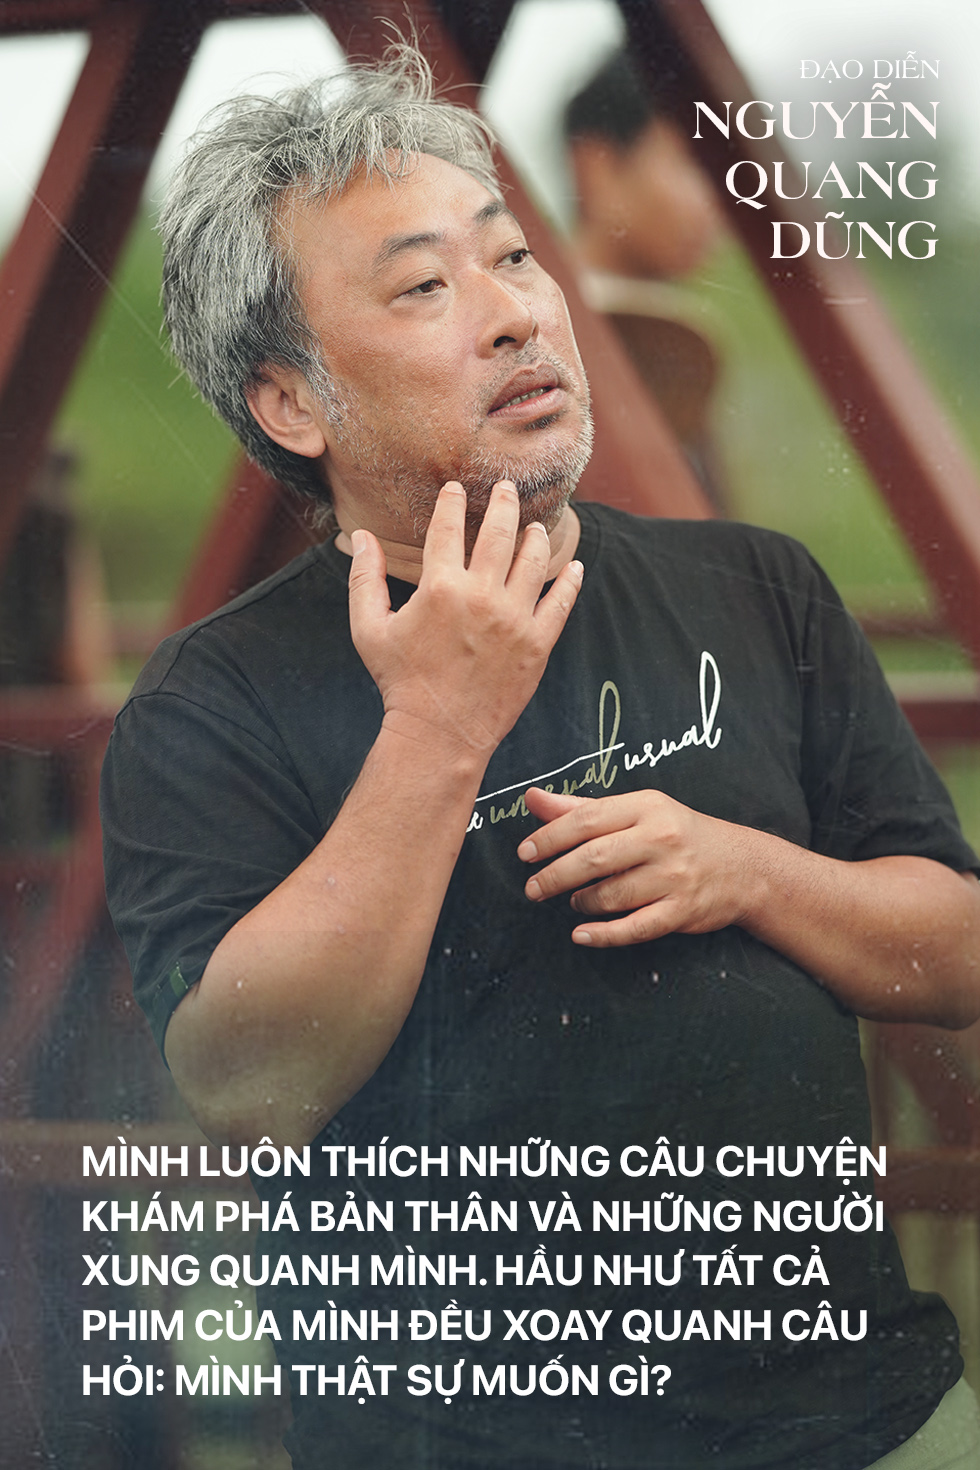 Đạo diễn Nguyễn Quang Dũng: “Đi sâu vào mới thấy hết cái đẹp của miền Tây” - Ảnh 3.